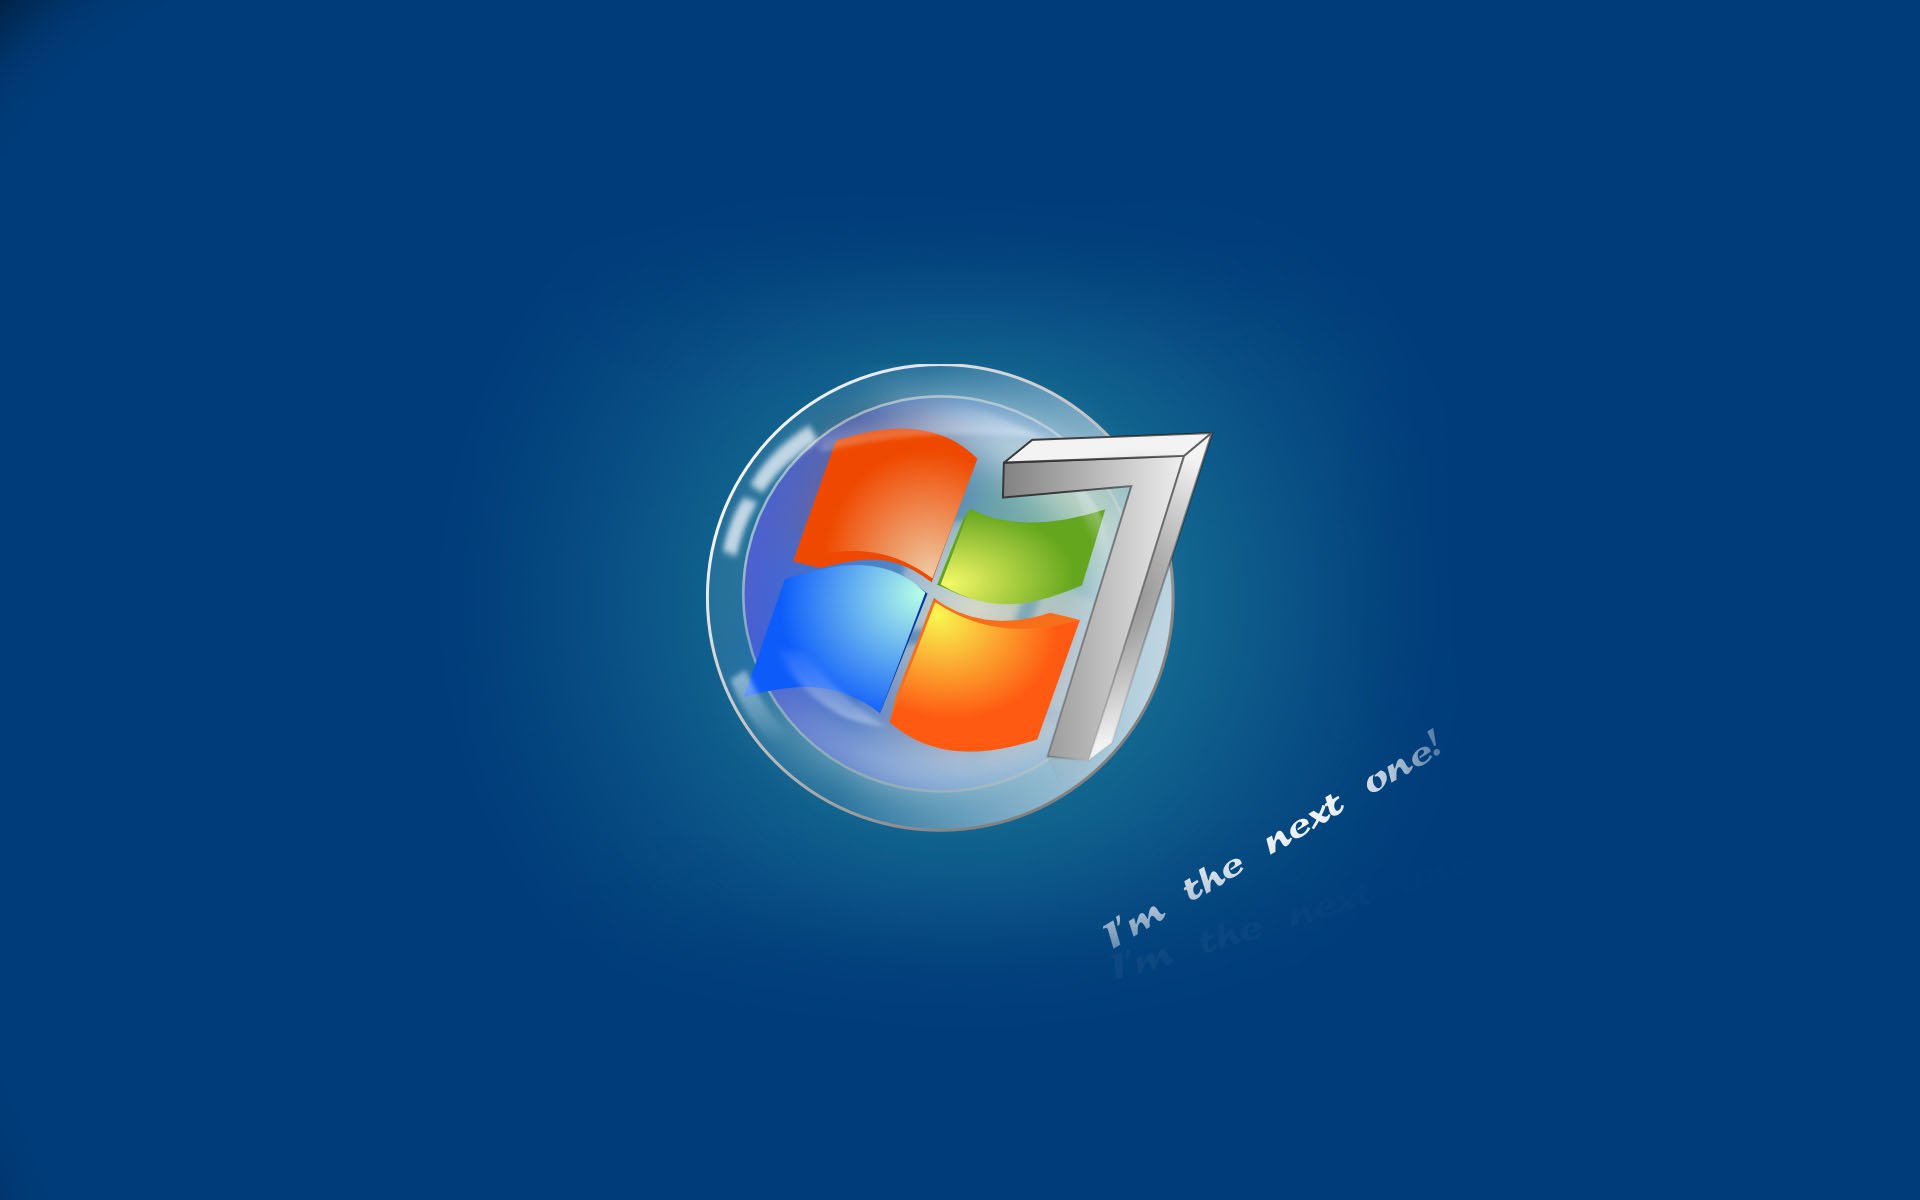 Windows 7 Original Wallpaper - WallpaperSafari